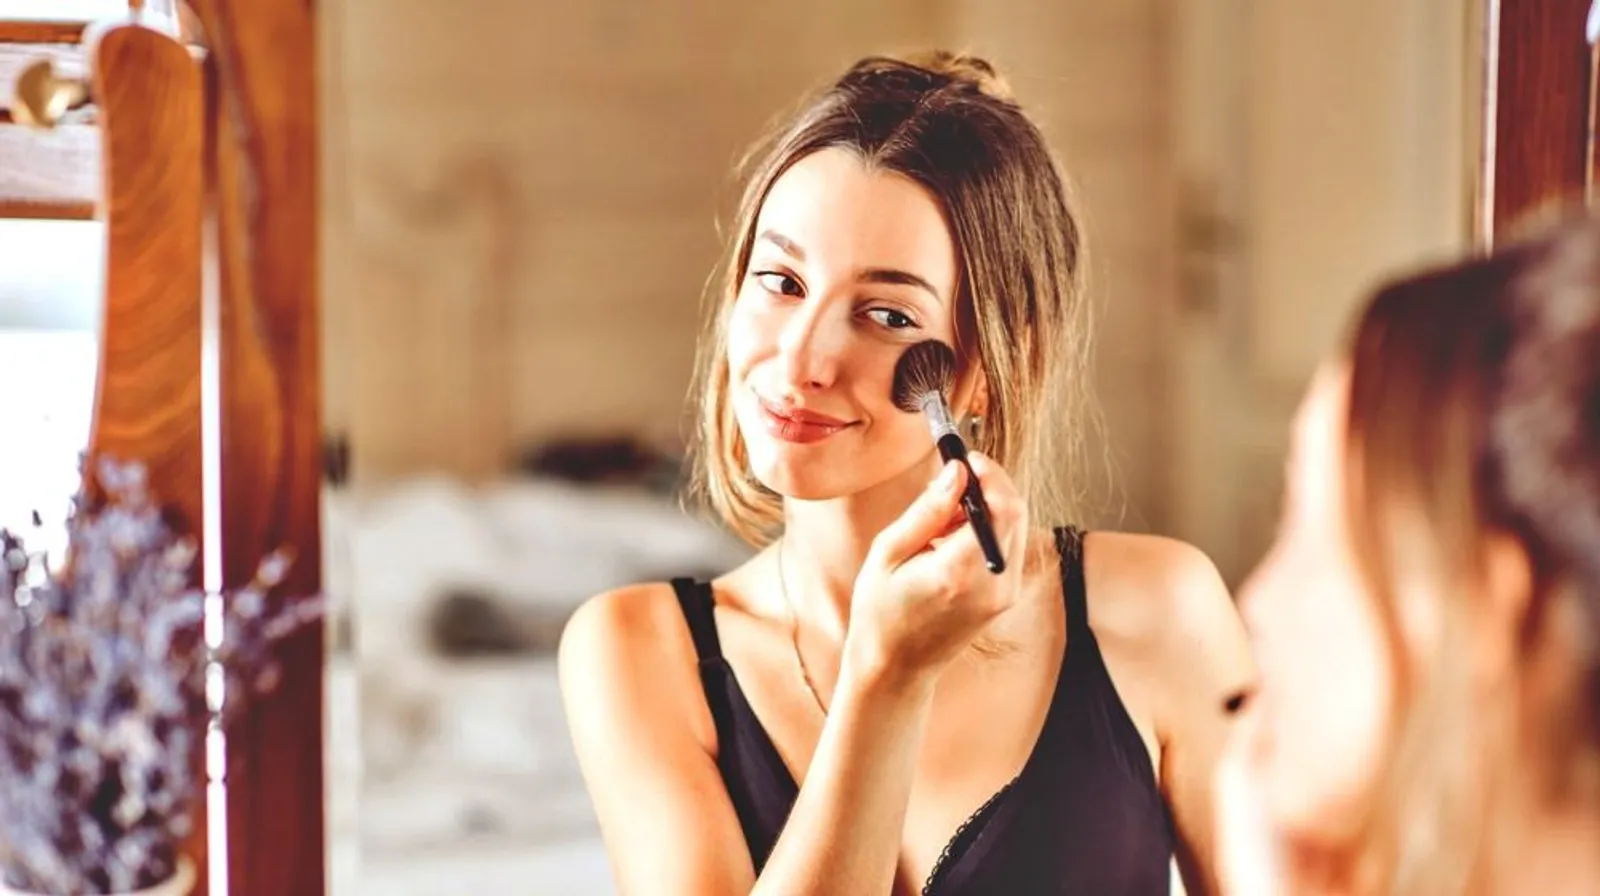 Nggak Ribet, Ini 5 Cara Membersihkan Brush Makeup yang Bisa Kamu Coba